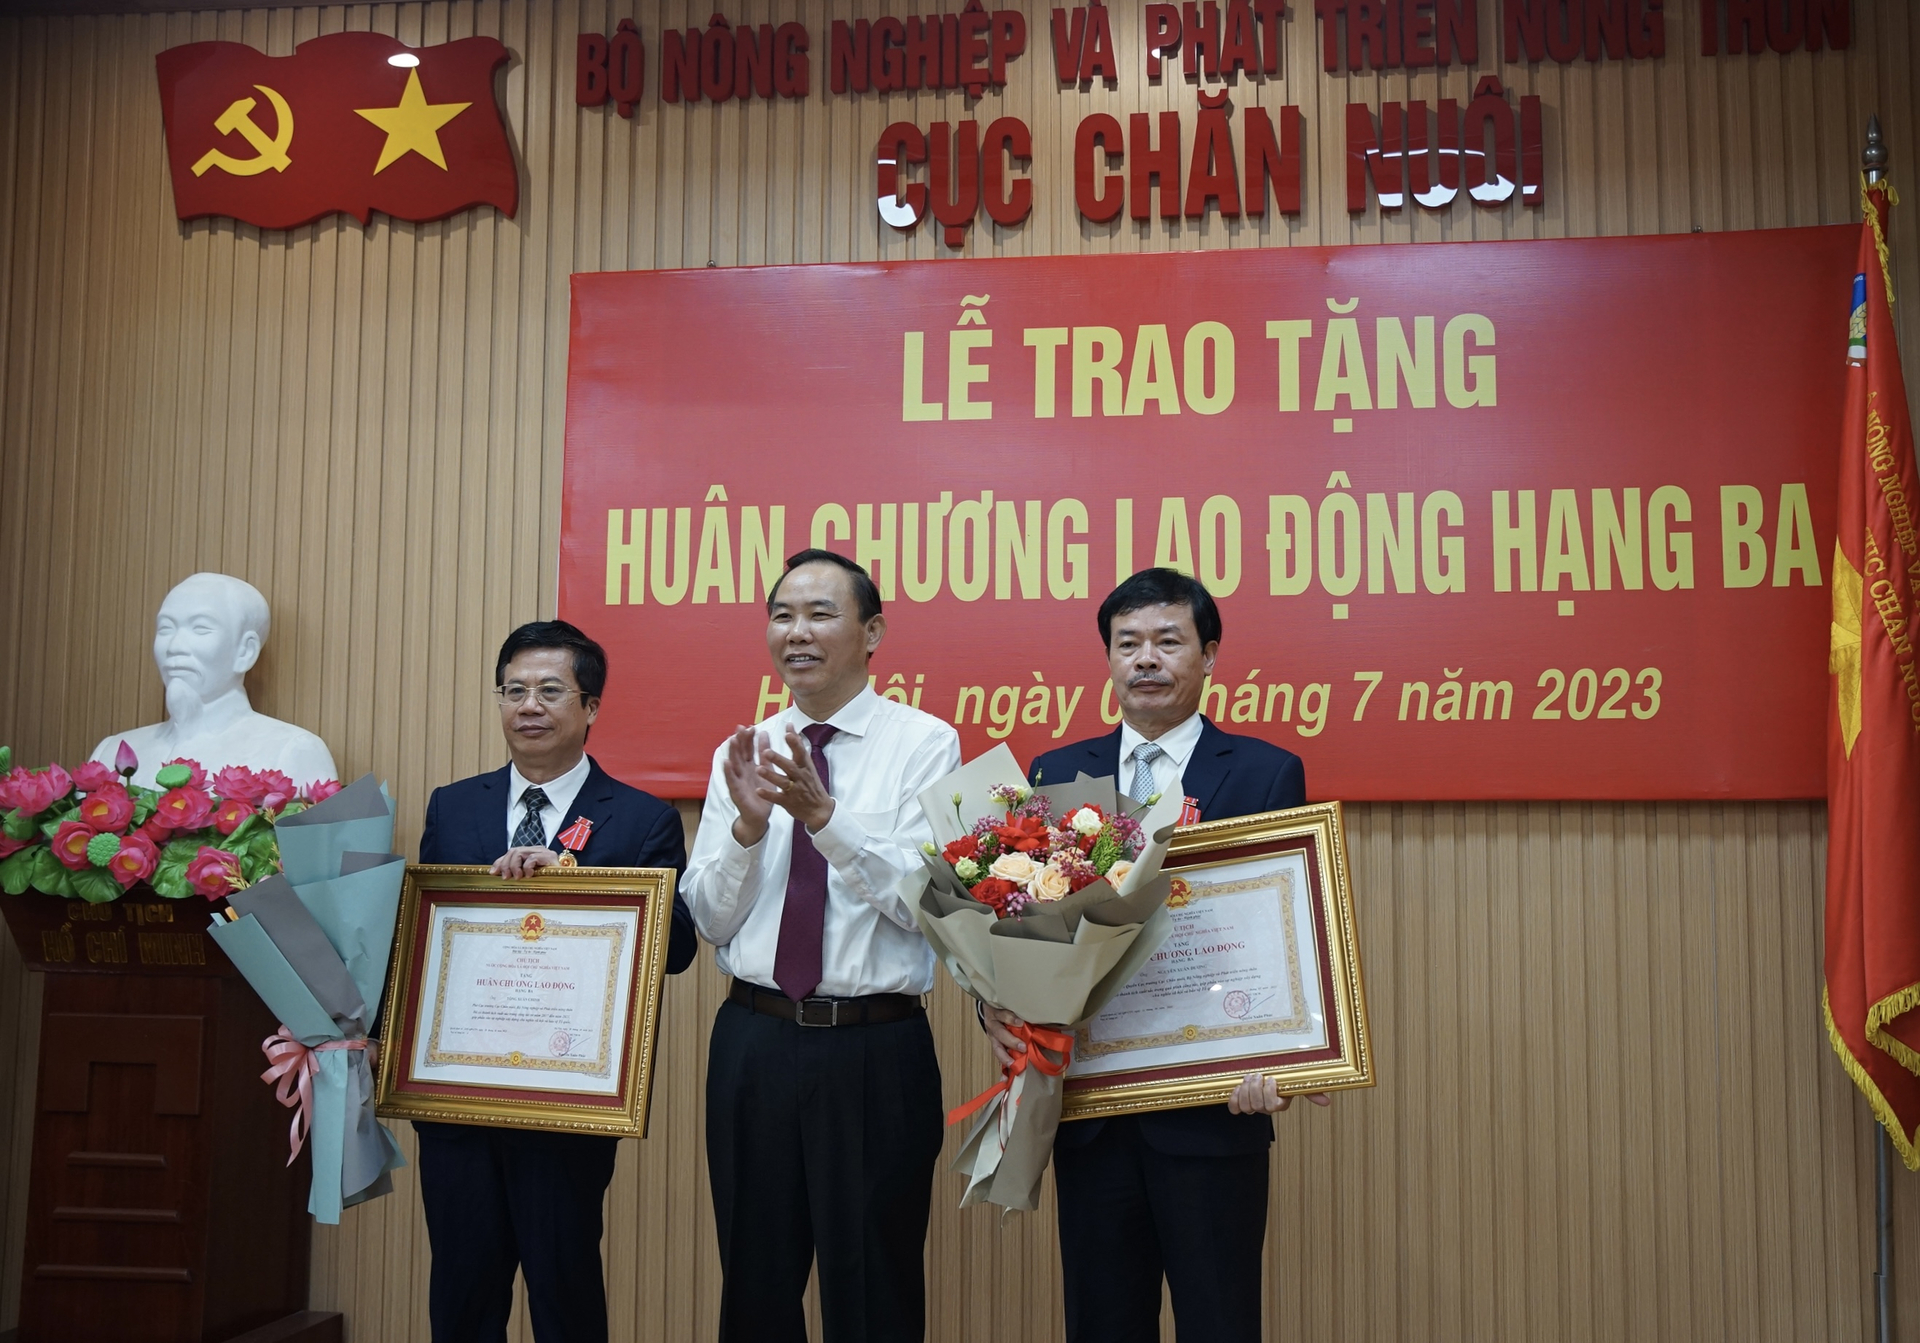 Ông Nguyễn Xuân Dương (phải), nguyên Quyền Cục trưởng và ông Tống Xuân Chinh (trái), Phó Cục trưởng Cục Chăn nuôi nhận Huân chương Lao động hạng Ba. Ảnh: Linh Linh. 